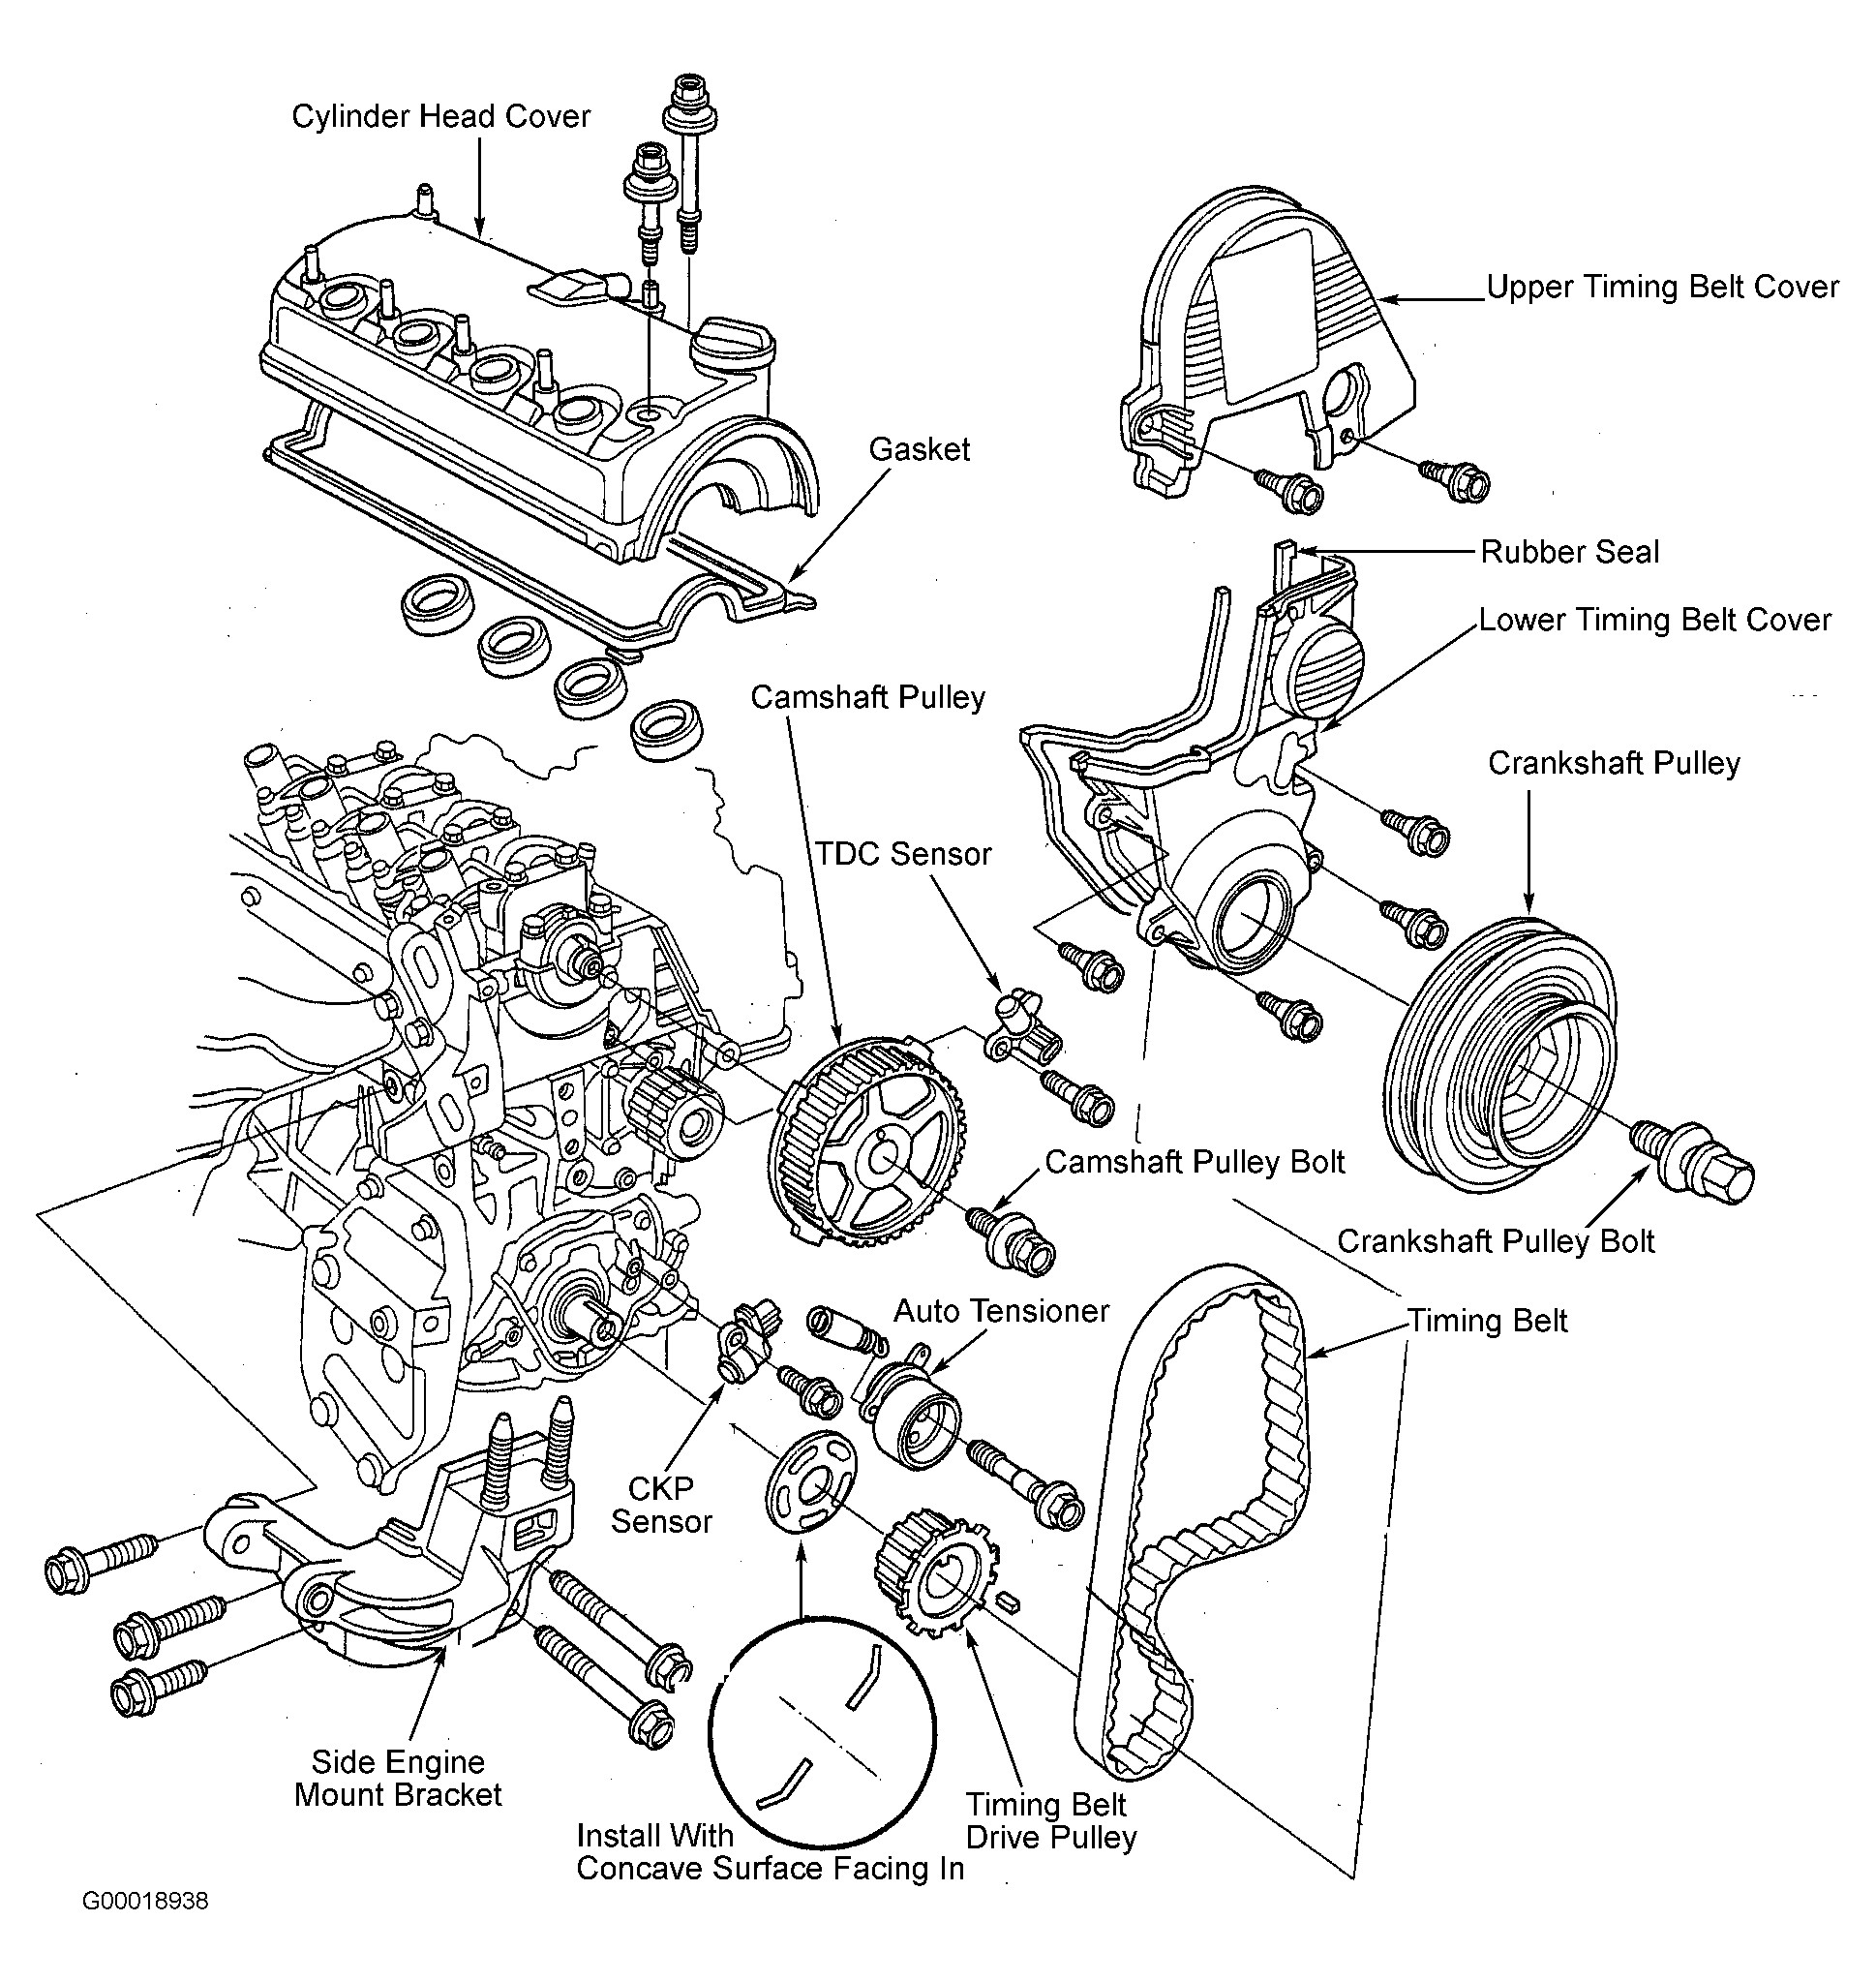 Car Part Diagram Honda Civic Parts Diagram Wonderful Likeness Serpentine and Timing Of Car Part Diagram